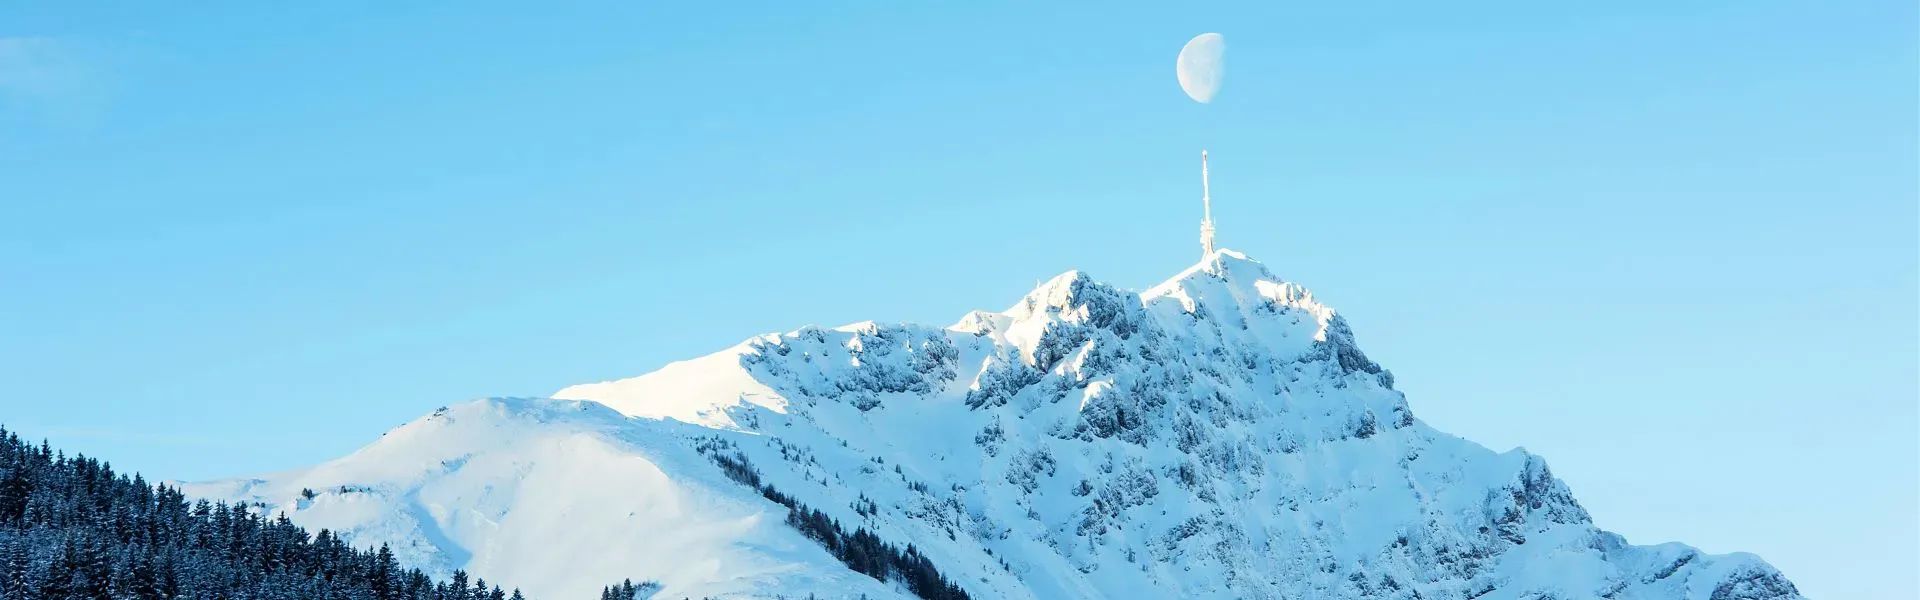 Kitzbüheler Horn mit Mond  - Region St. Johann in Tirol